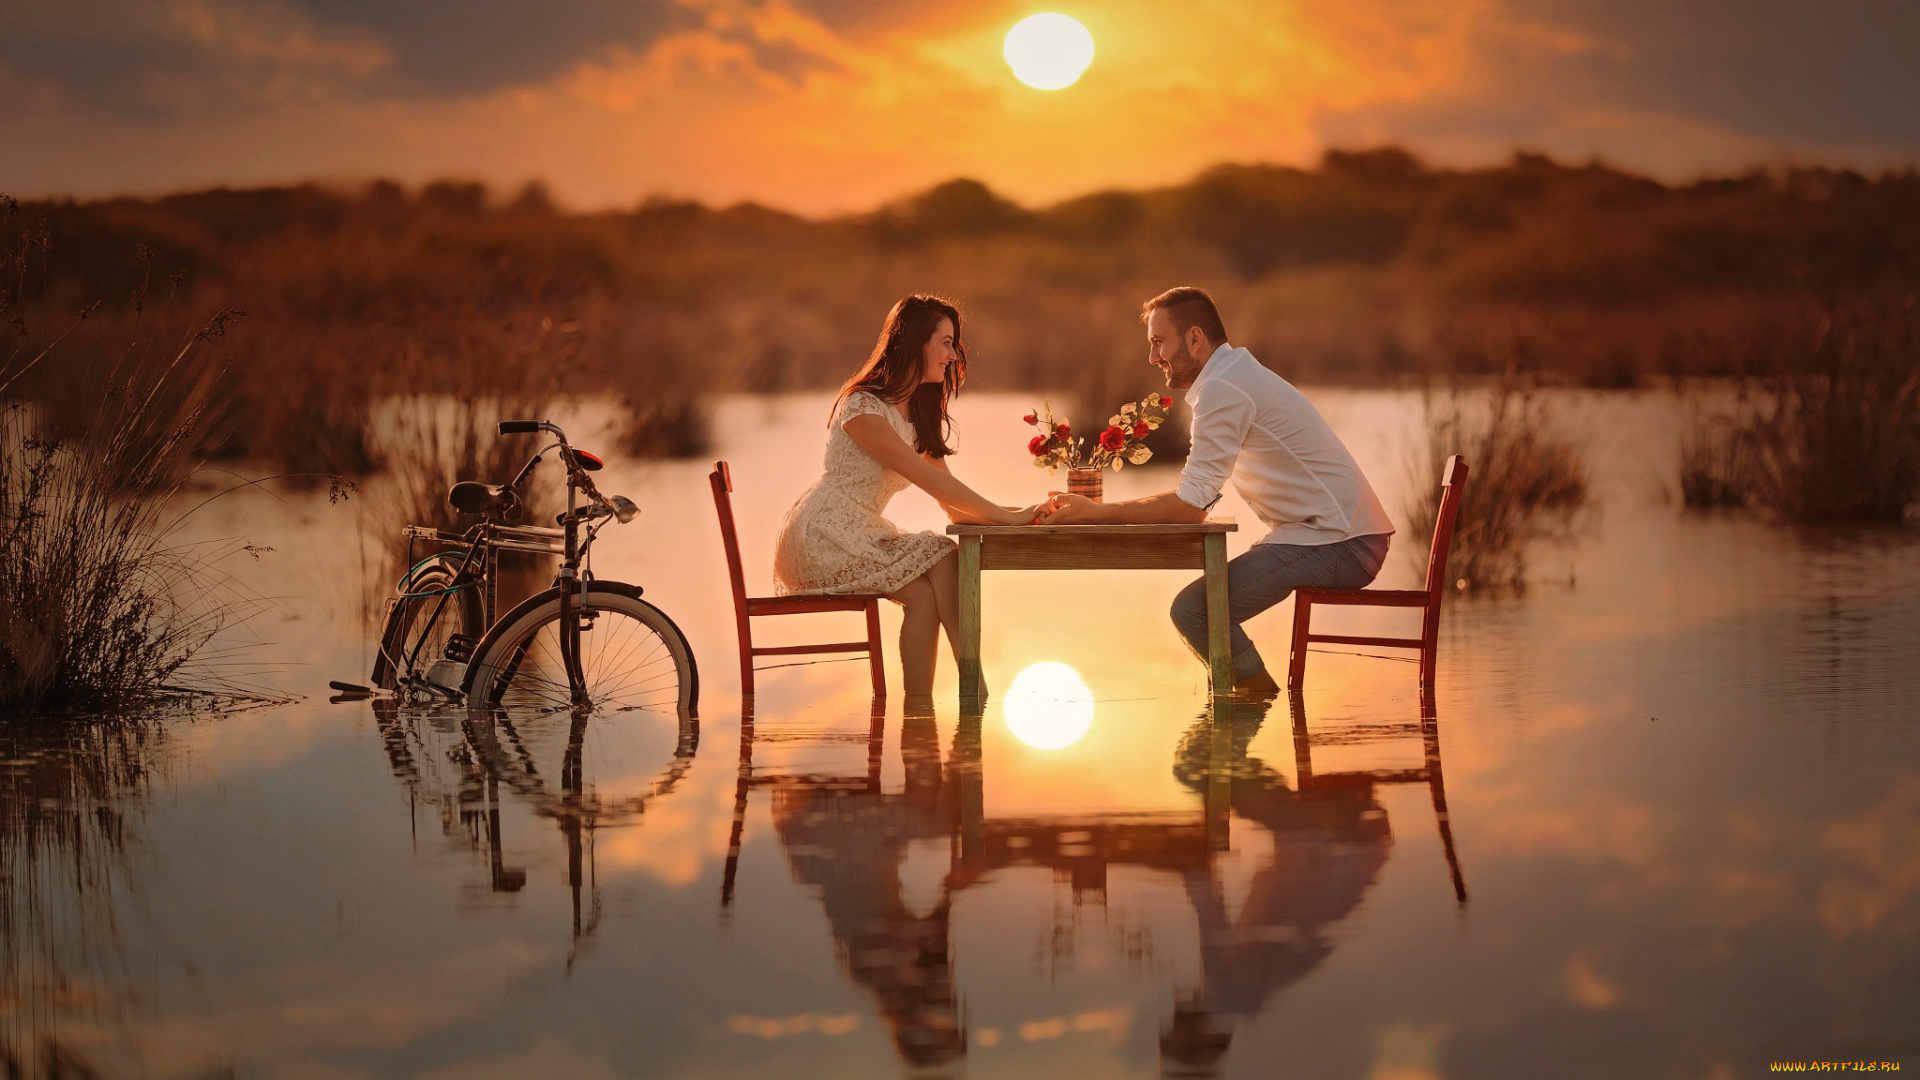 разное, мужчина, женщина, беседа, солнце, вода, влюблённые, велосипед, стол, пара, романтика